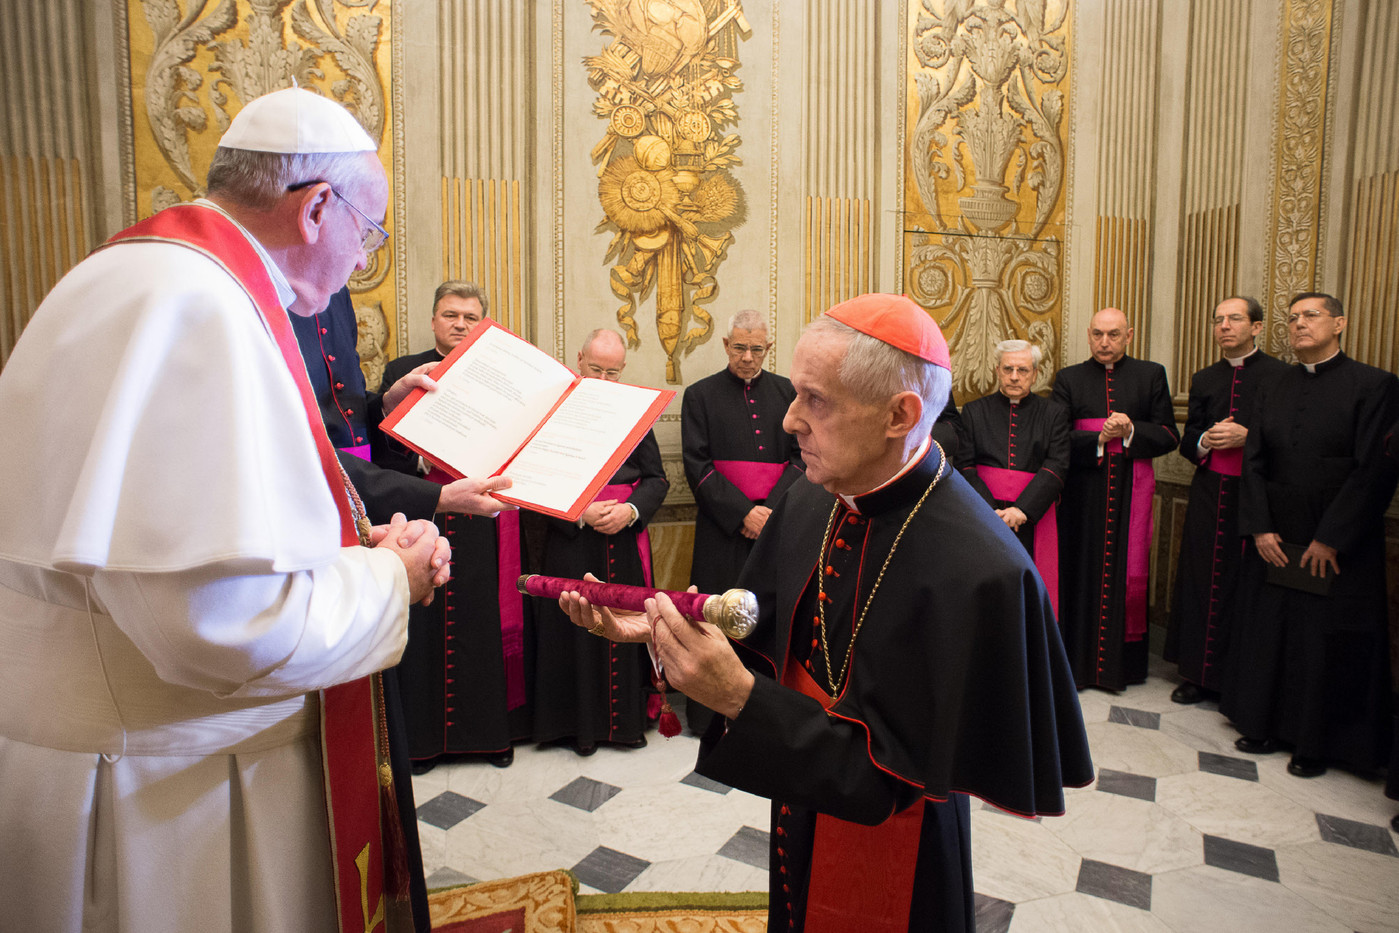 Кардинал Торан принес присягу в качестве нового камерленго Римской Церкви